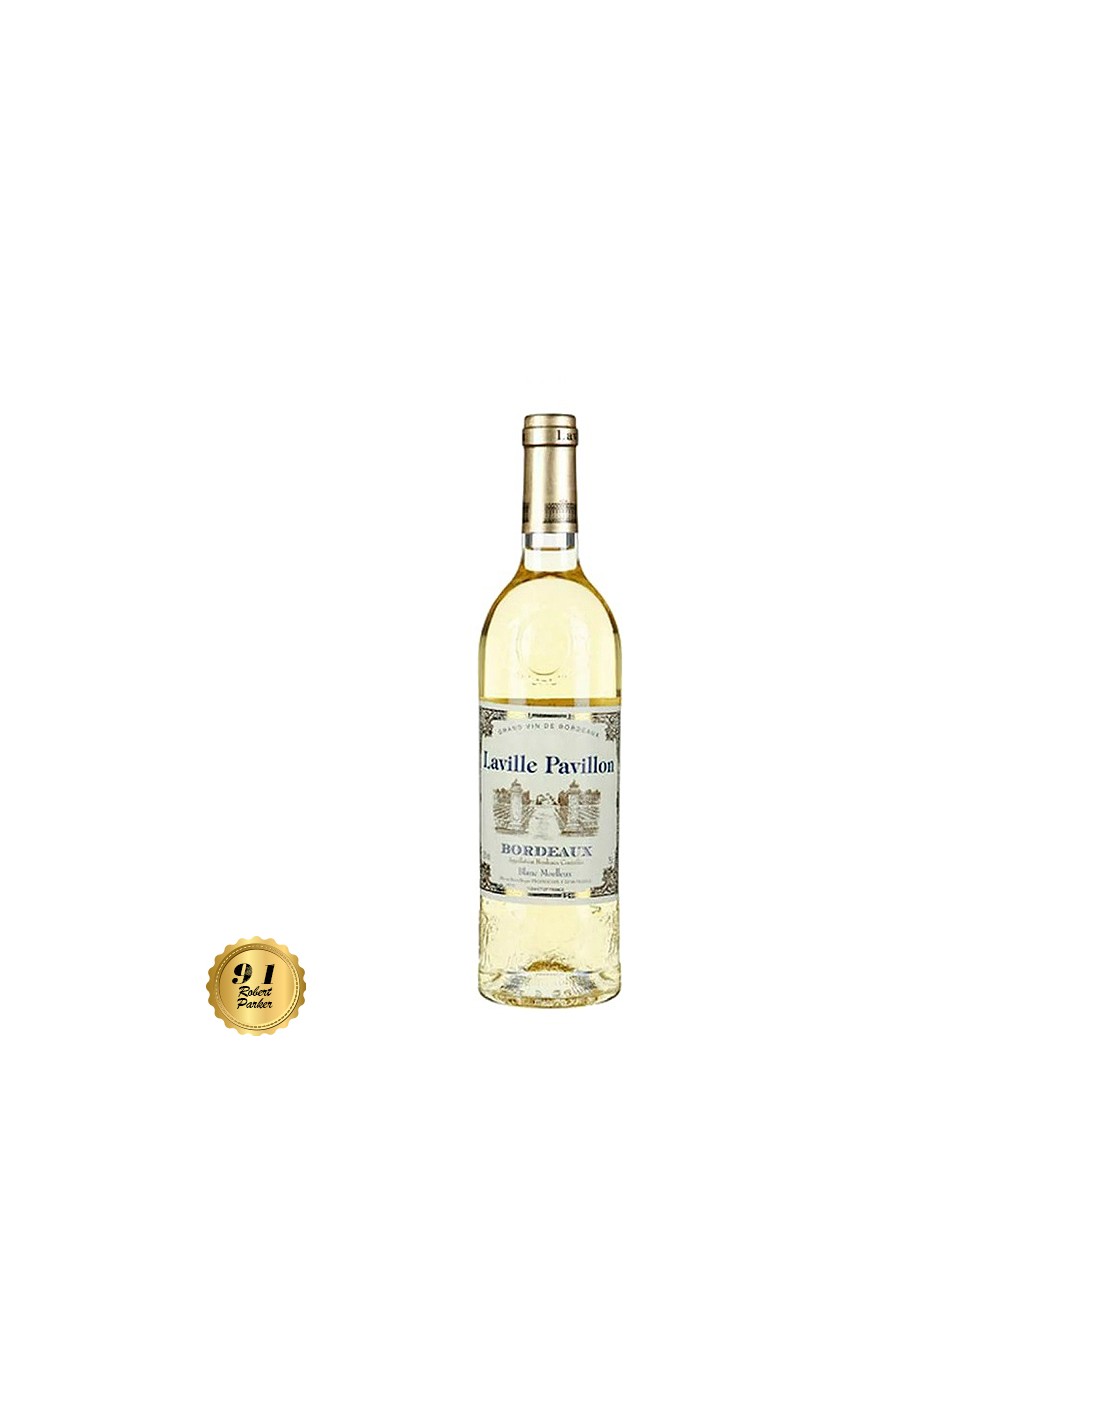 Vin alb dulce Laville Pavillon Bordeaux, 0.75L, 11.5% alc., Franta alcooldiscount.ro